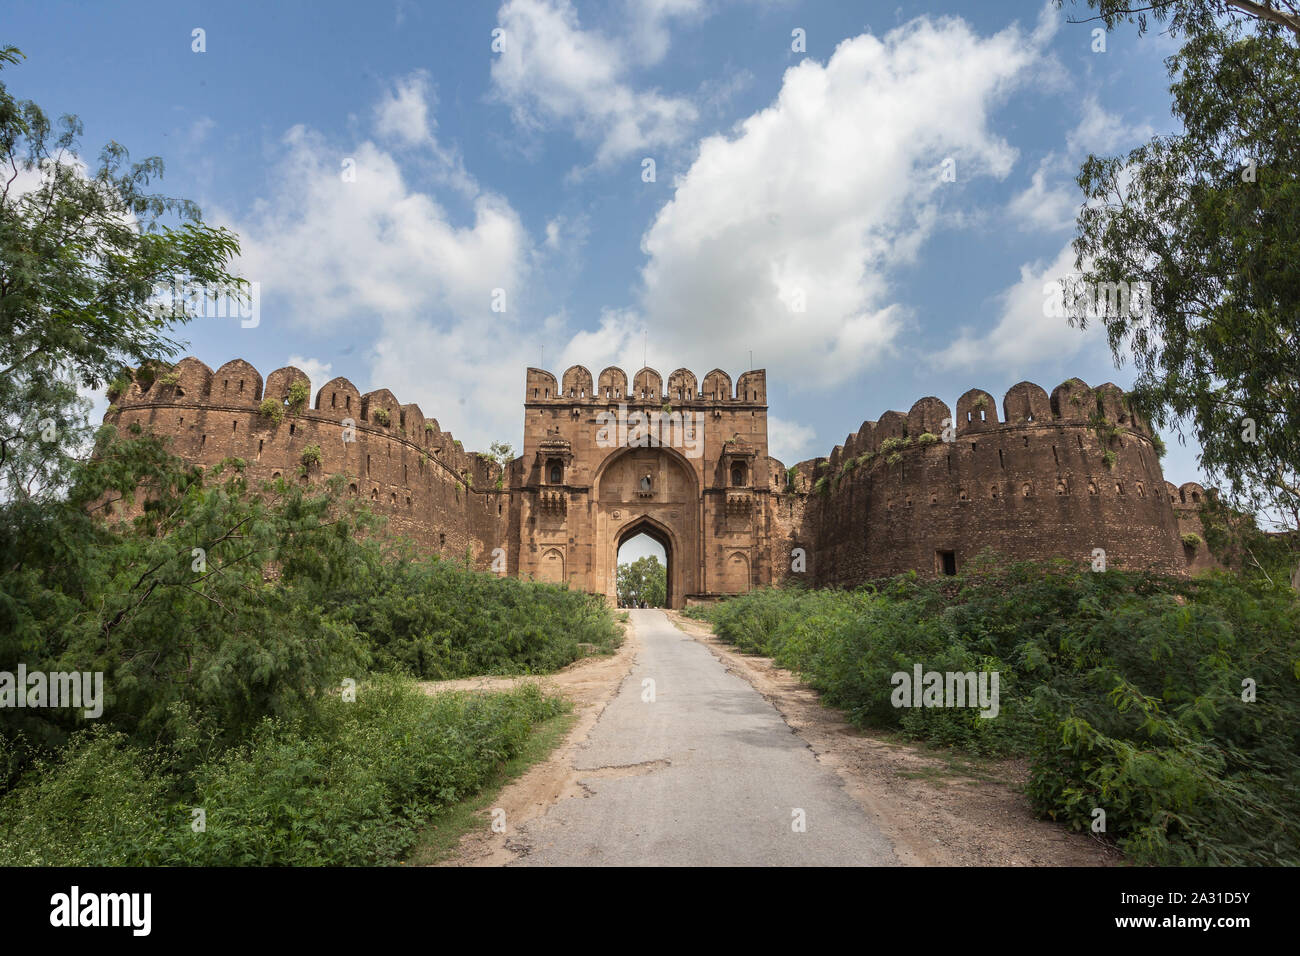 Le fort de Rohtas (Punjabi, ourdou : قلعہ روہتاس, romanisé : Qilā Rohtās) est une forteresse du 16e siècle située près de la ville de Dina dans le Jhelum, au Punjab. Banque D'Images